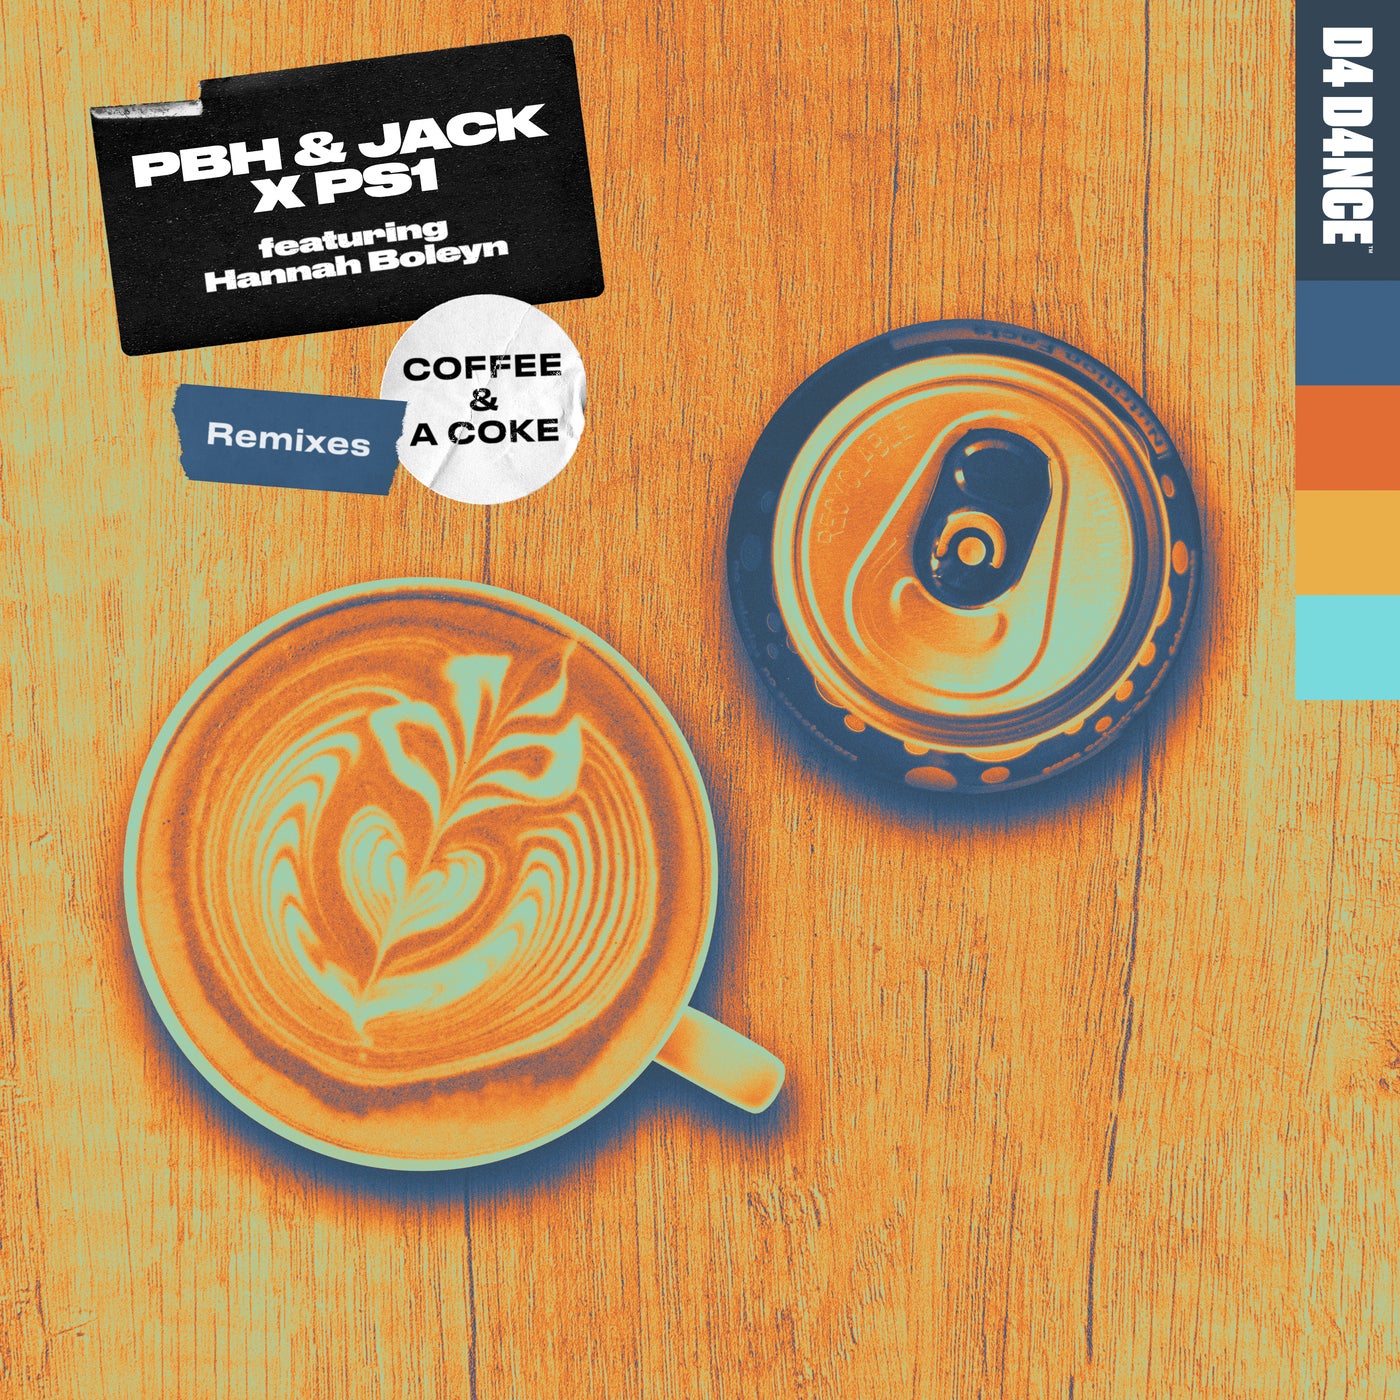 PBH & Jack x PS1 feat. Hannah Boleyn - Coffee & A Coke (Exit 11 Extended Remix)